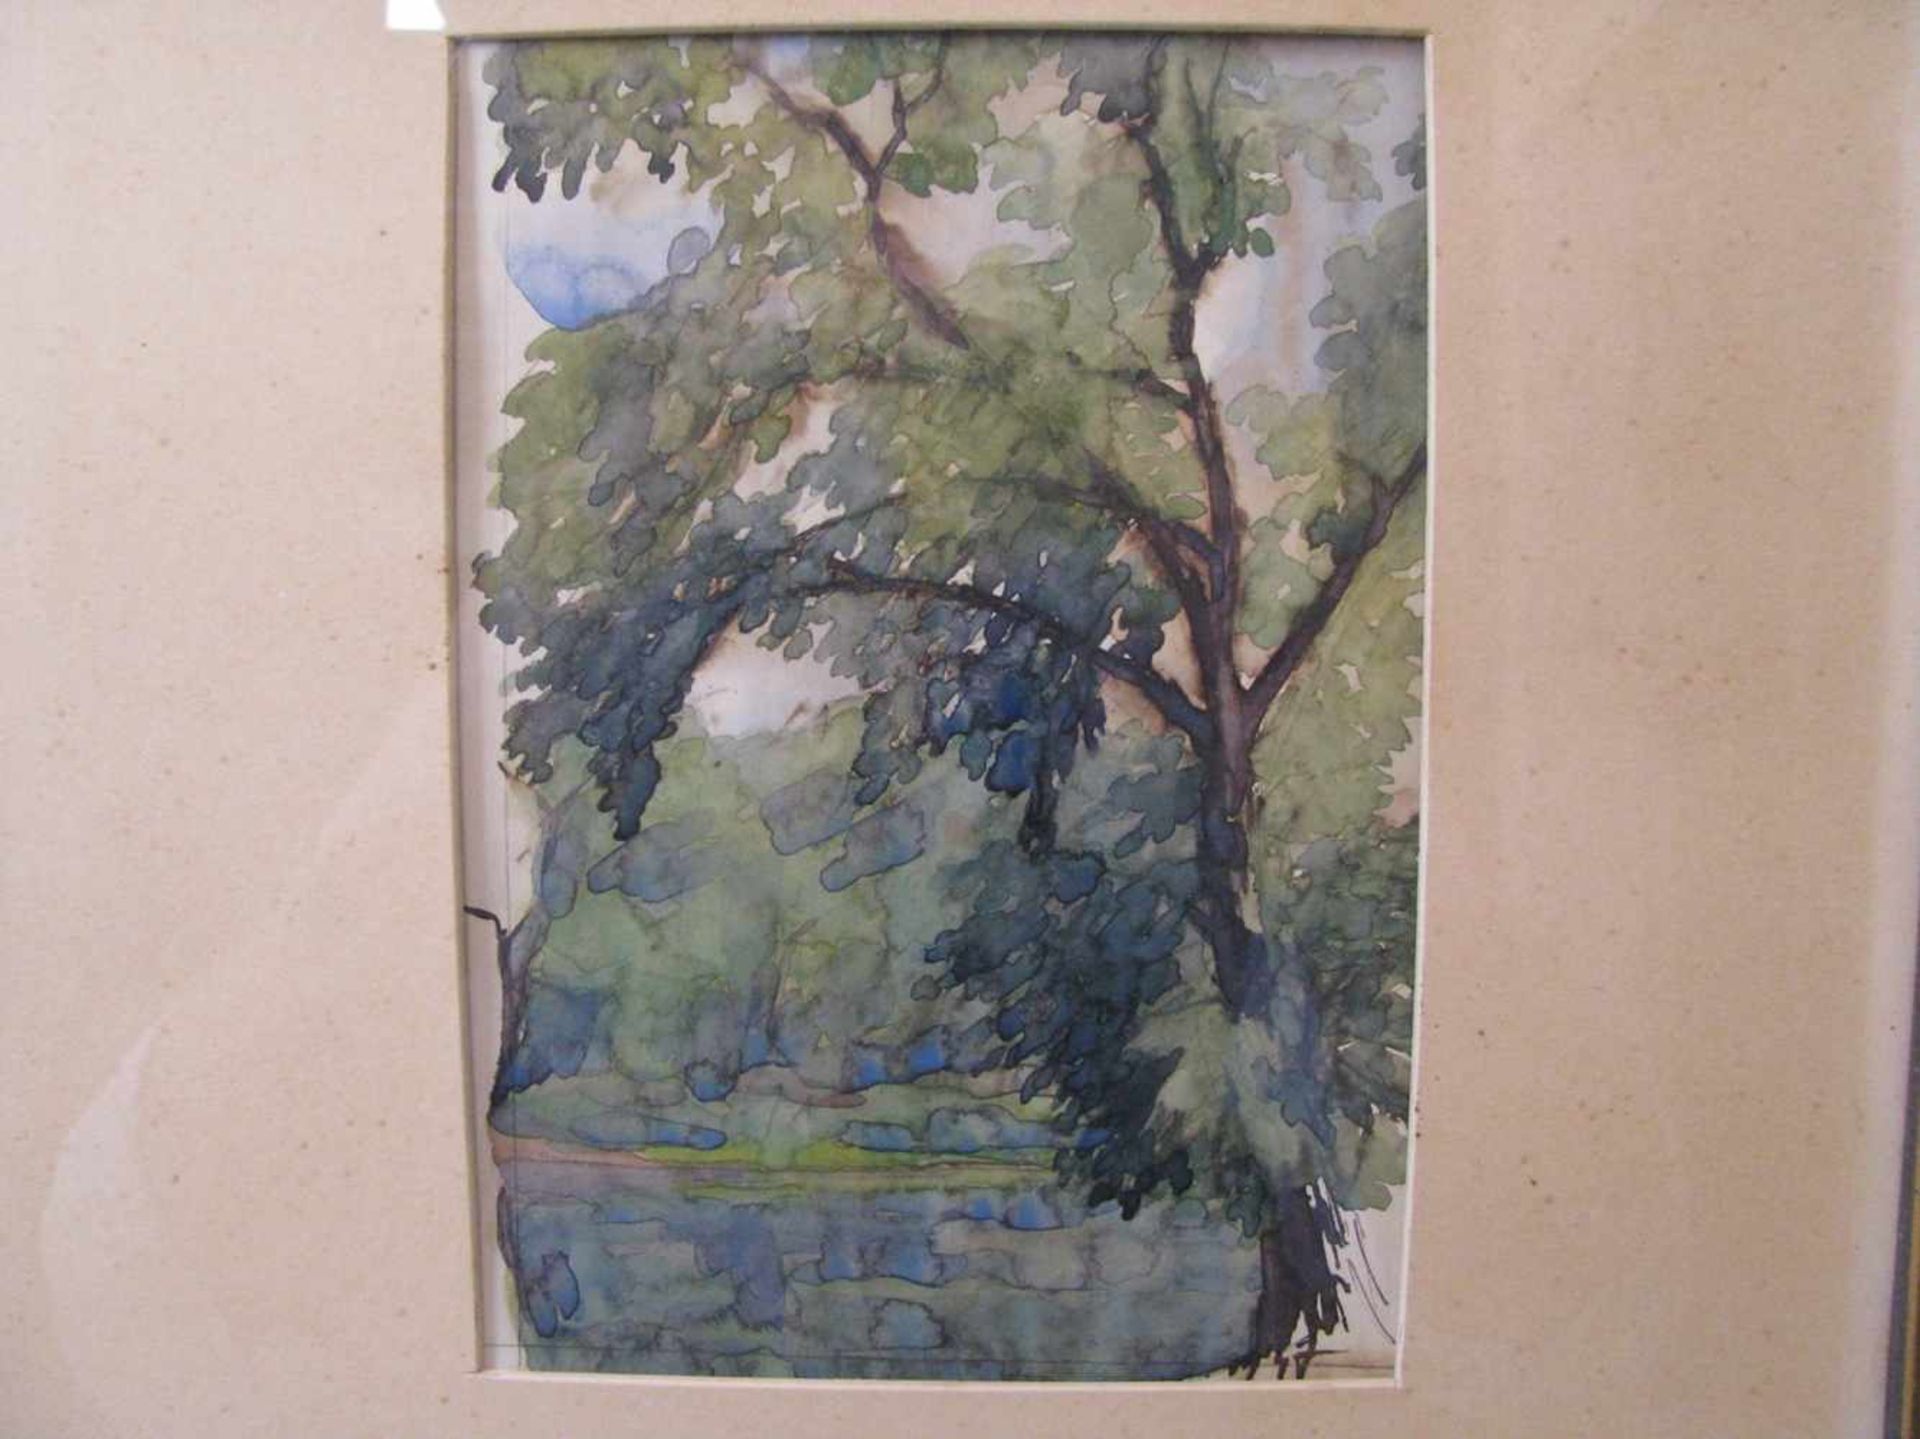 Unbekannt, 4 Landschaftsstudien, Aquarelle, 1. Hälfte 20. Jahrhundert, ca. 18 x 12,5 cm, R.< - Bild 3 aus 3